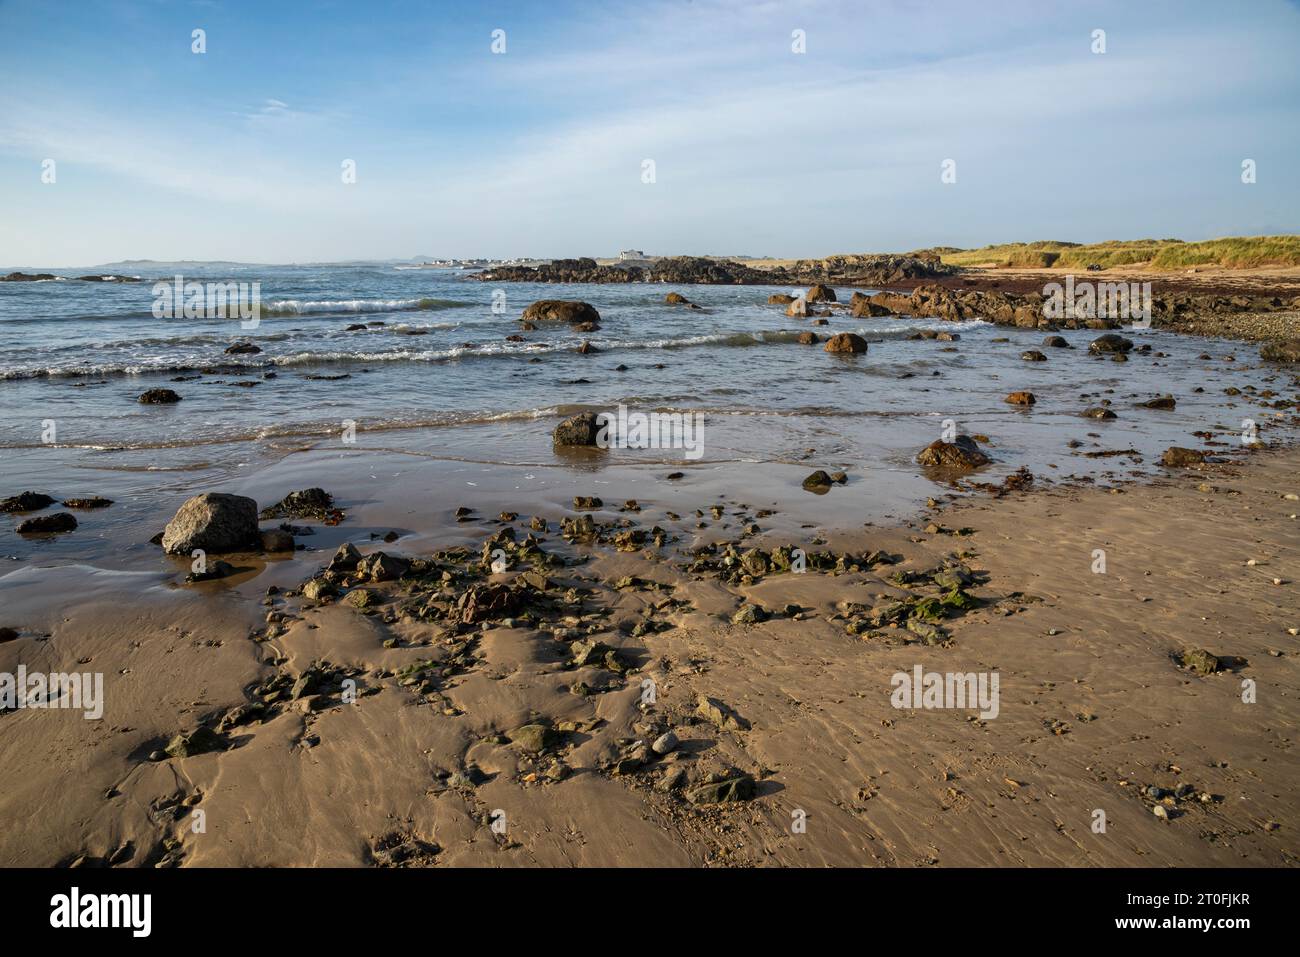 Splendida costa di spiagge sabbiose vicino a Rhosneigr sulla costa occidentale di Anglesey, Galles del Nord. Foto Stock